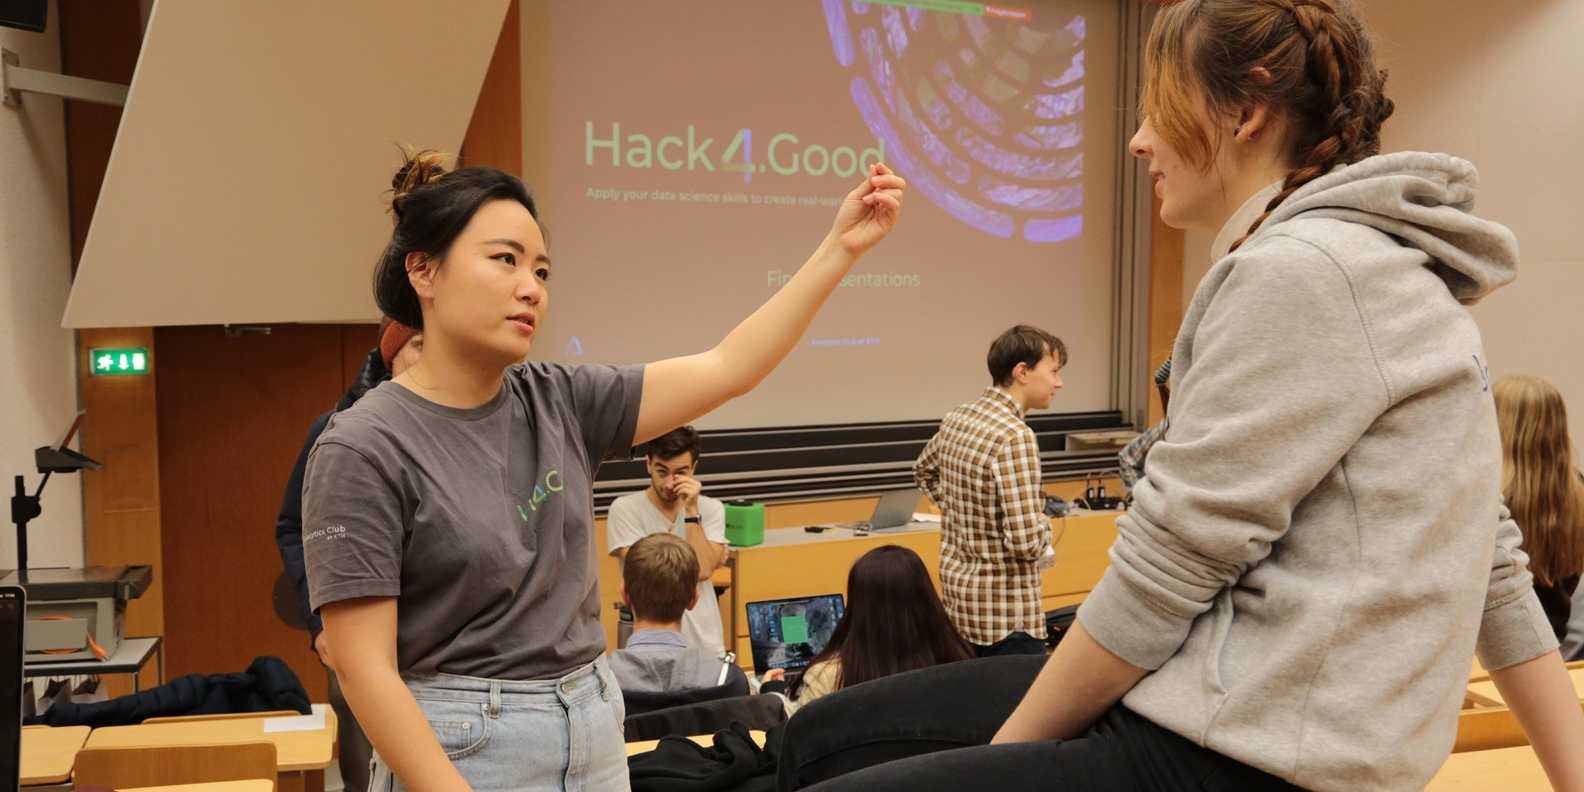 Zwei Teilnehmerinnen der Veranstaltung Hack4Good